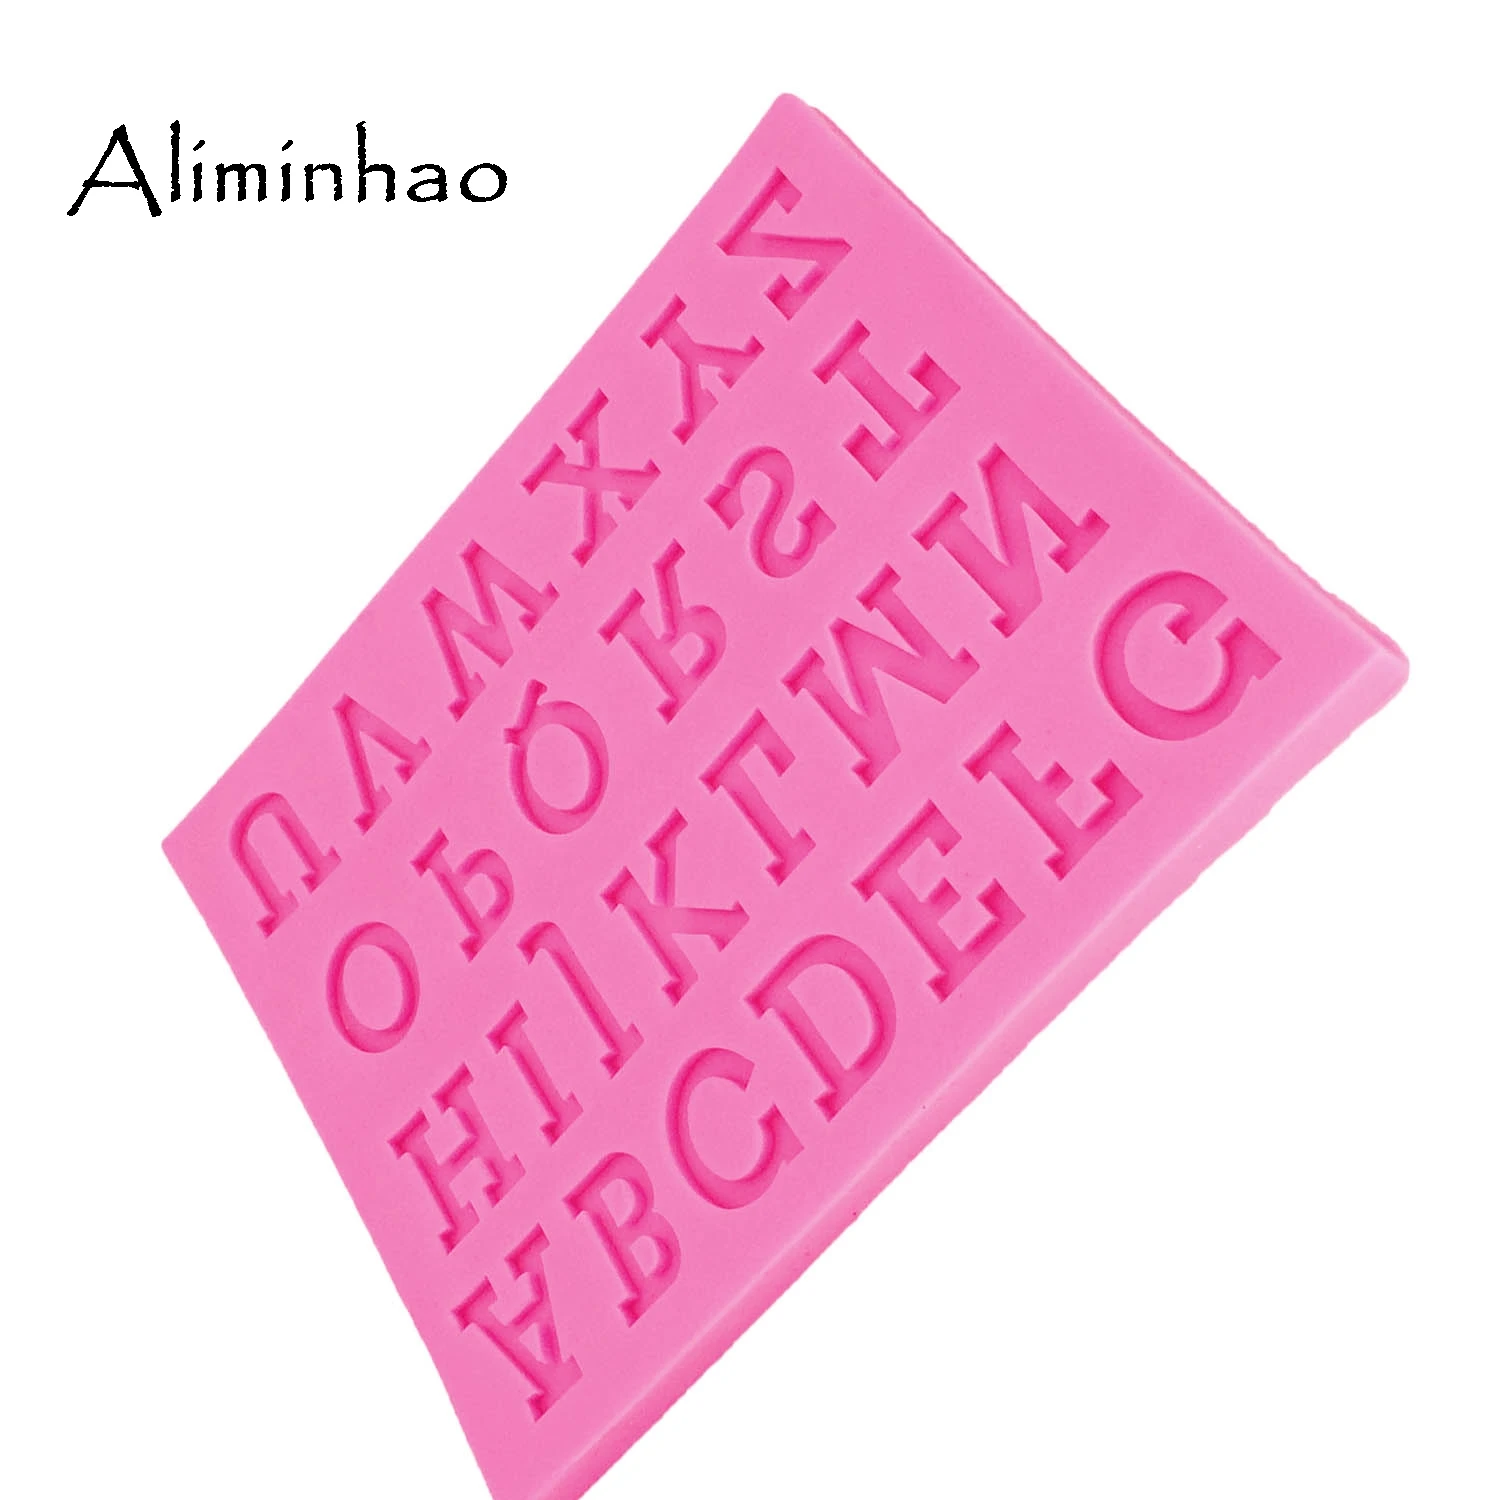 B1341 английская форма алфавита силиконовая форма письмо сахарный десертный конфеты шоколадные формы инструменты для украшения тортов из мастики